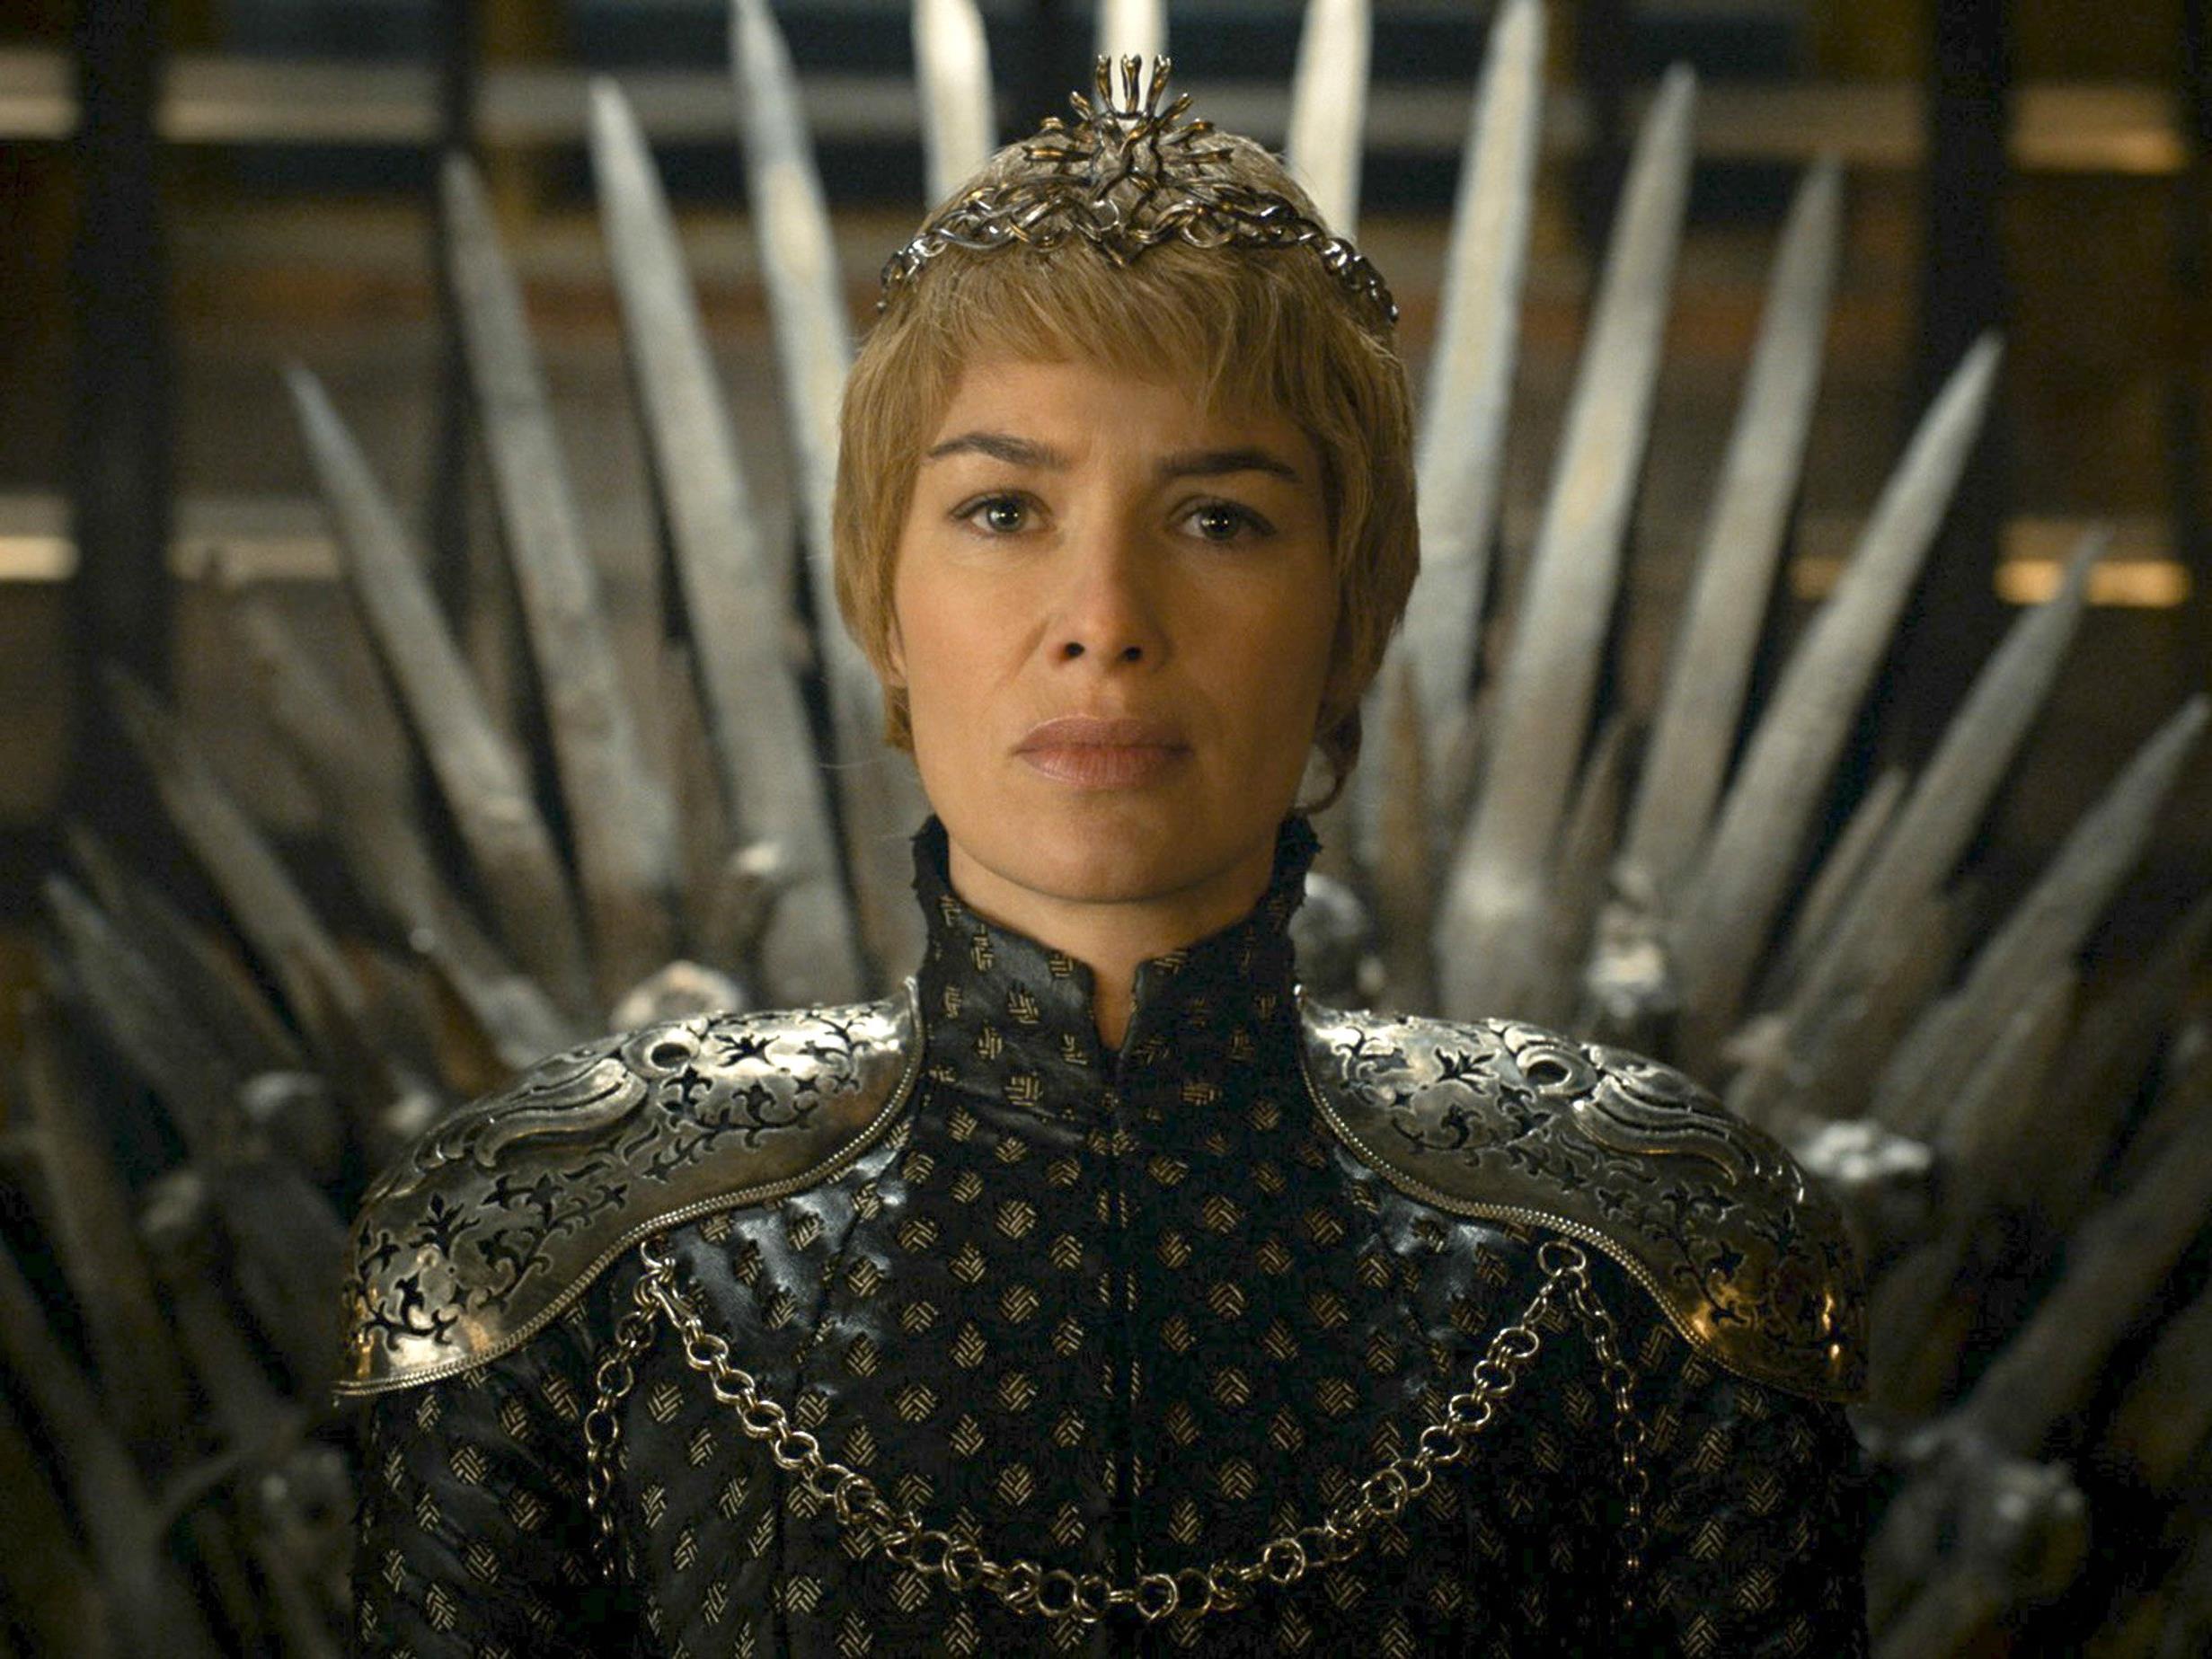 Die Fantasyserie "Game of Thrones" konnte 23 Emmy-Nominierungen erreichen